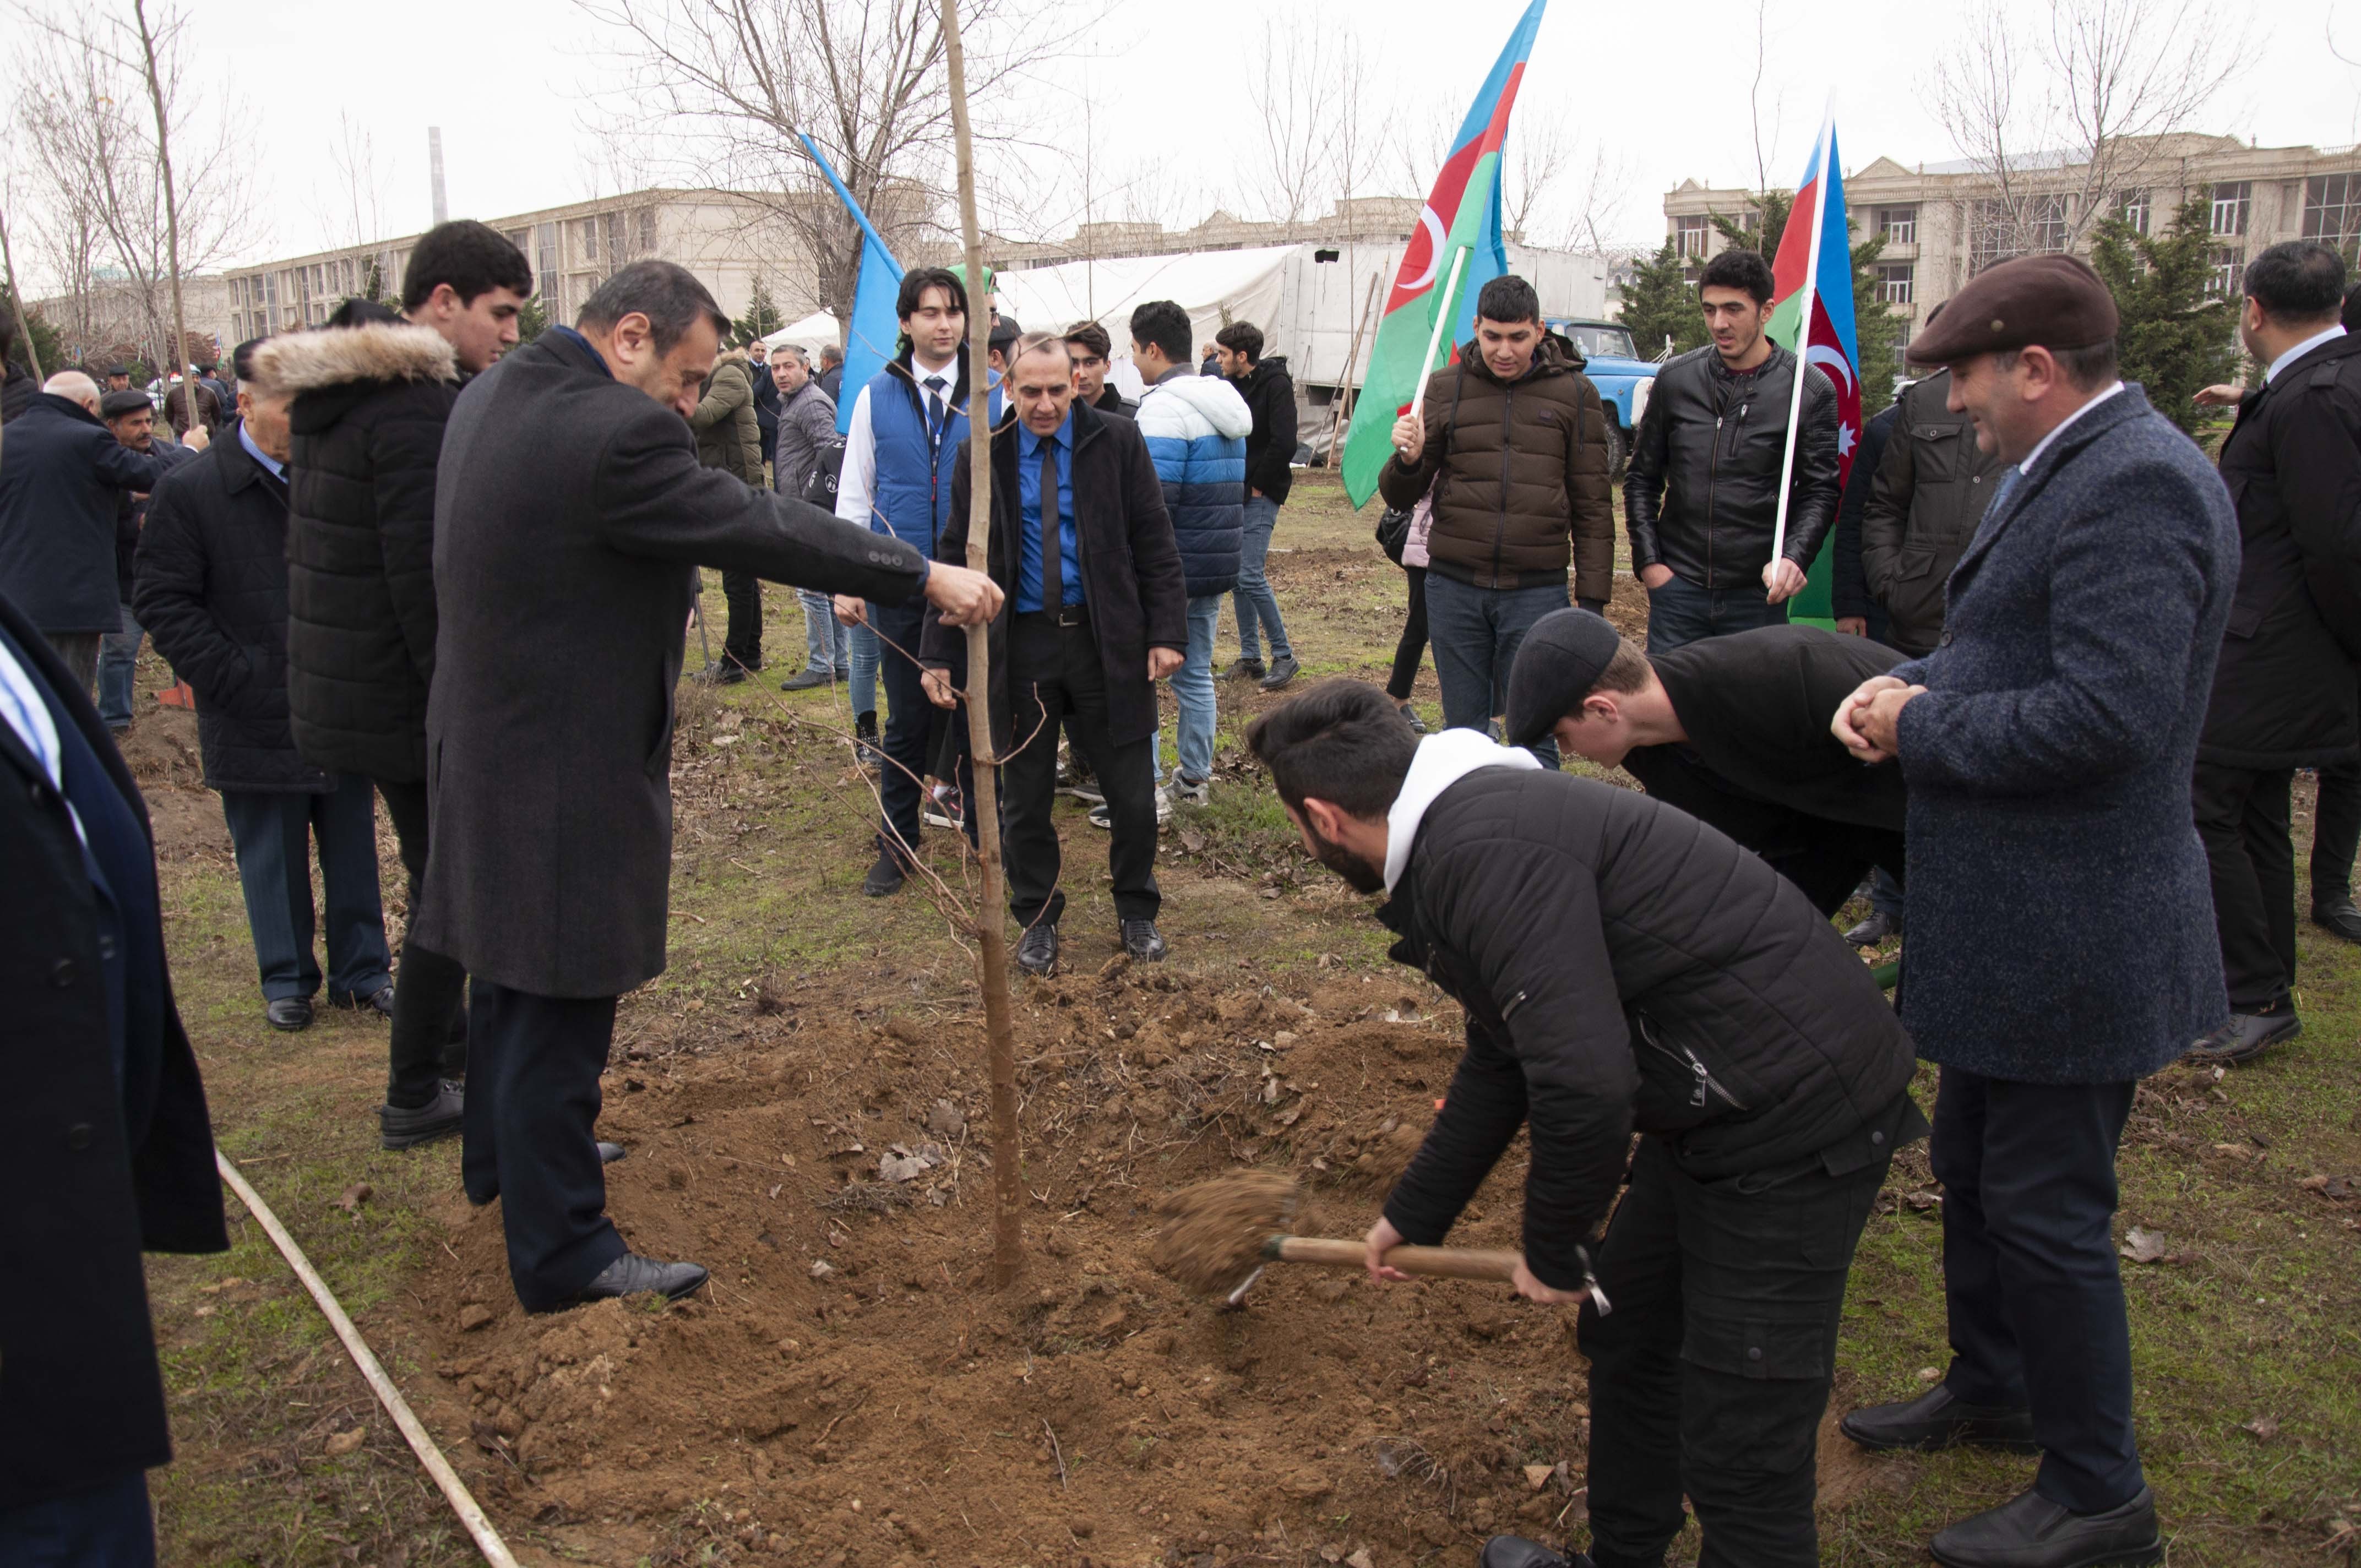 Nərimanov rayonunda 2500 ağac əkilib